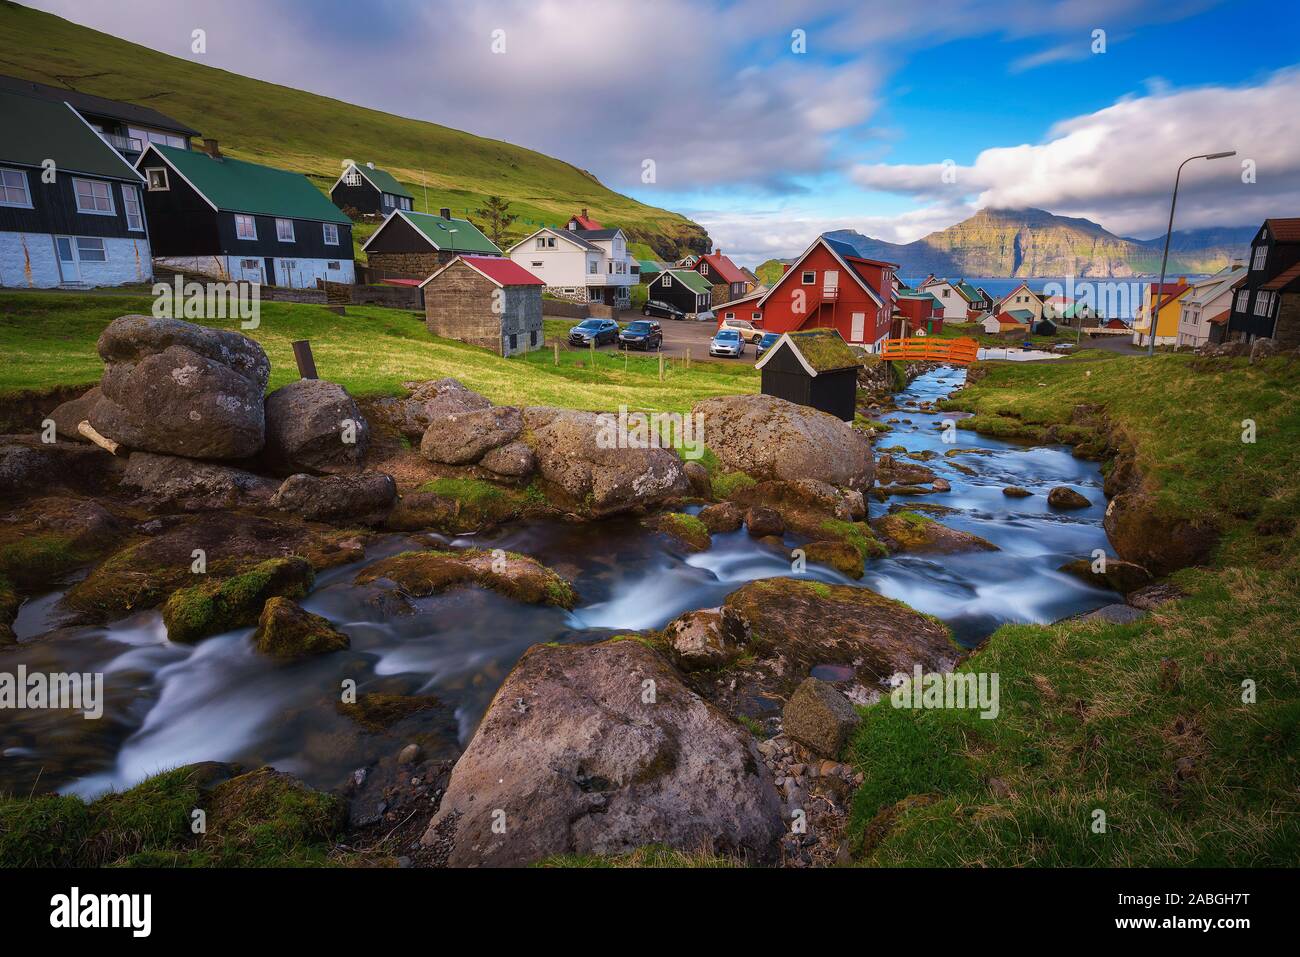 Dorf Gjogv auf den Färöer Inseln mit bunten Häusern und einem Creek Stockfoto